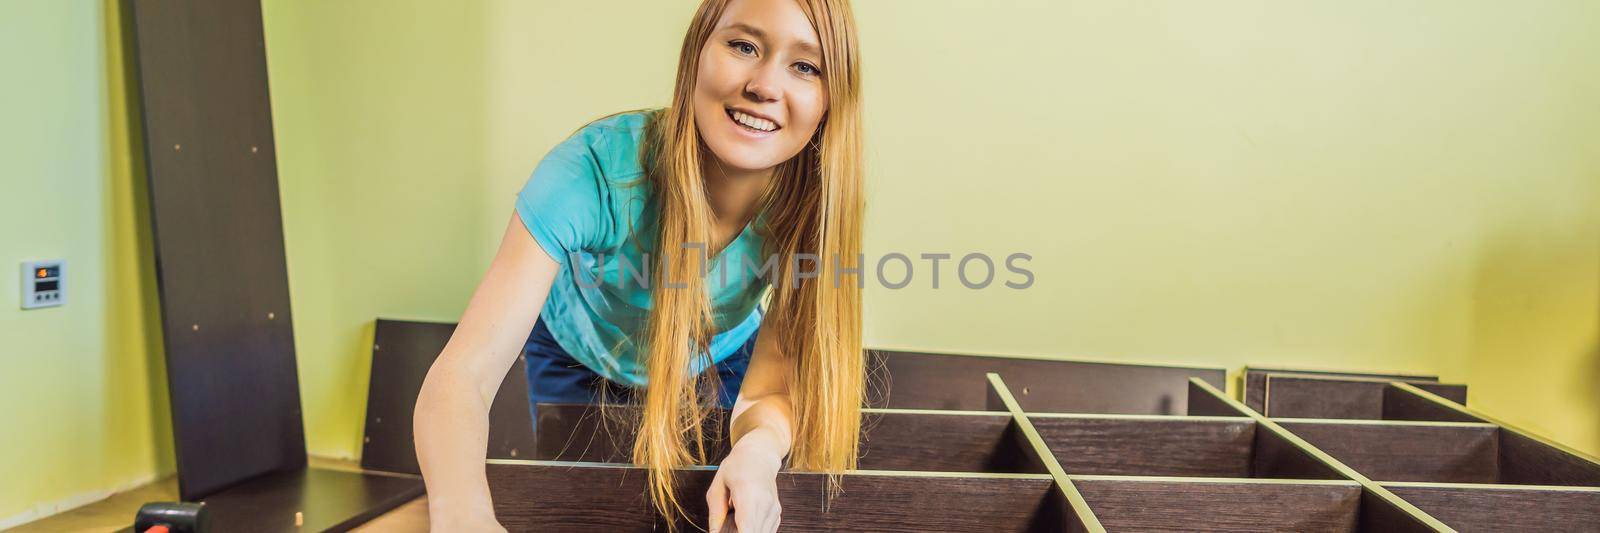 Caucasian woman using screwdriver for assembling furniture. BANNER, LONG FORMAT